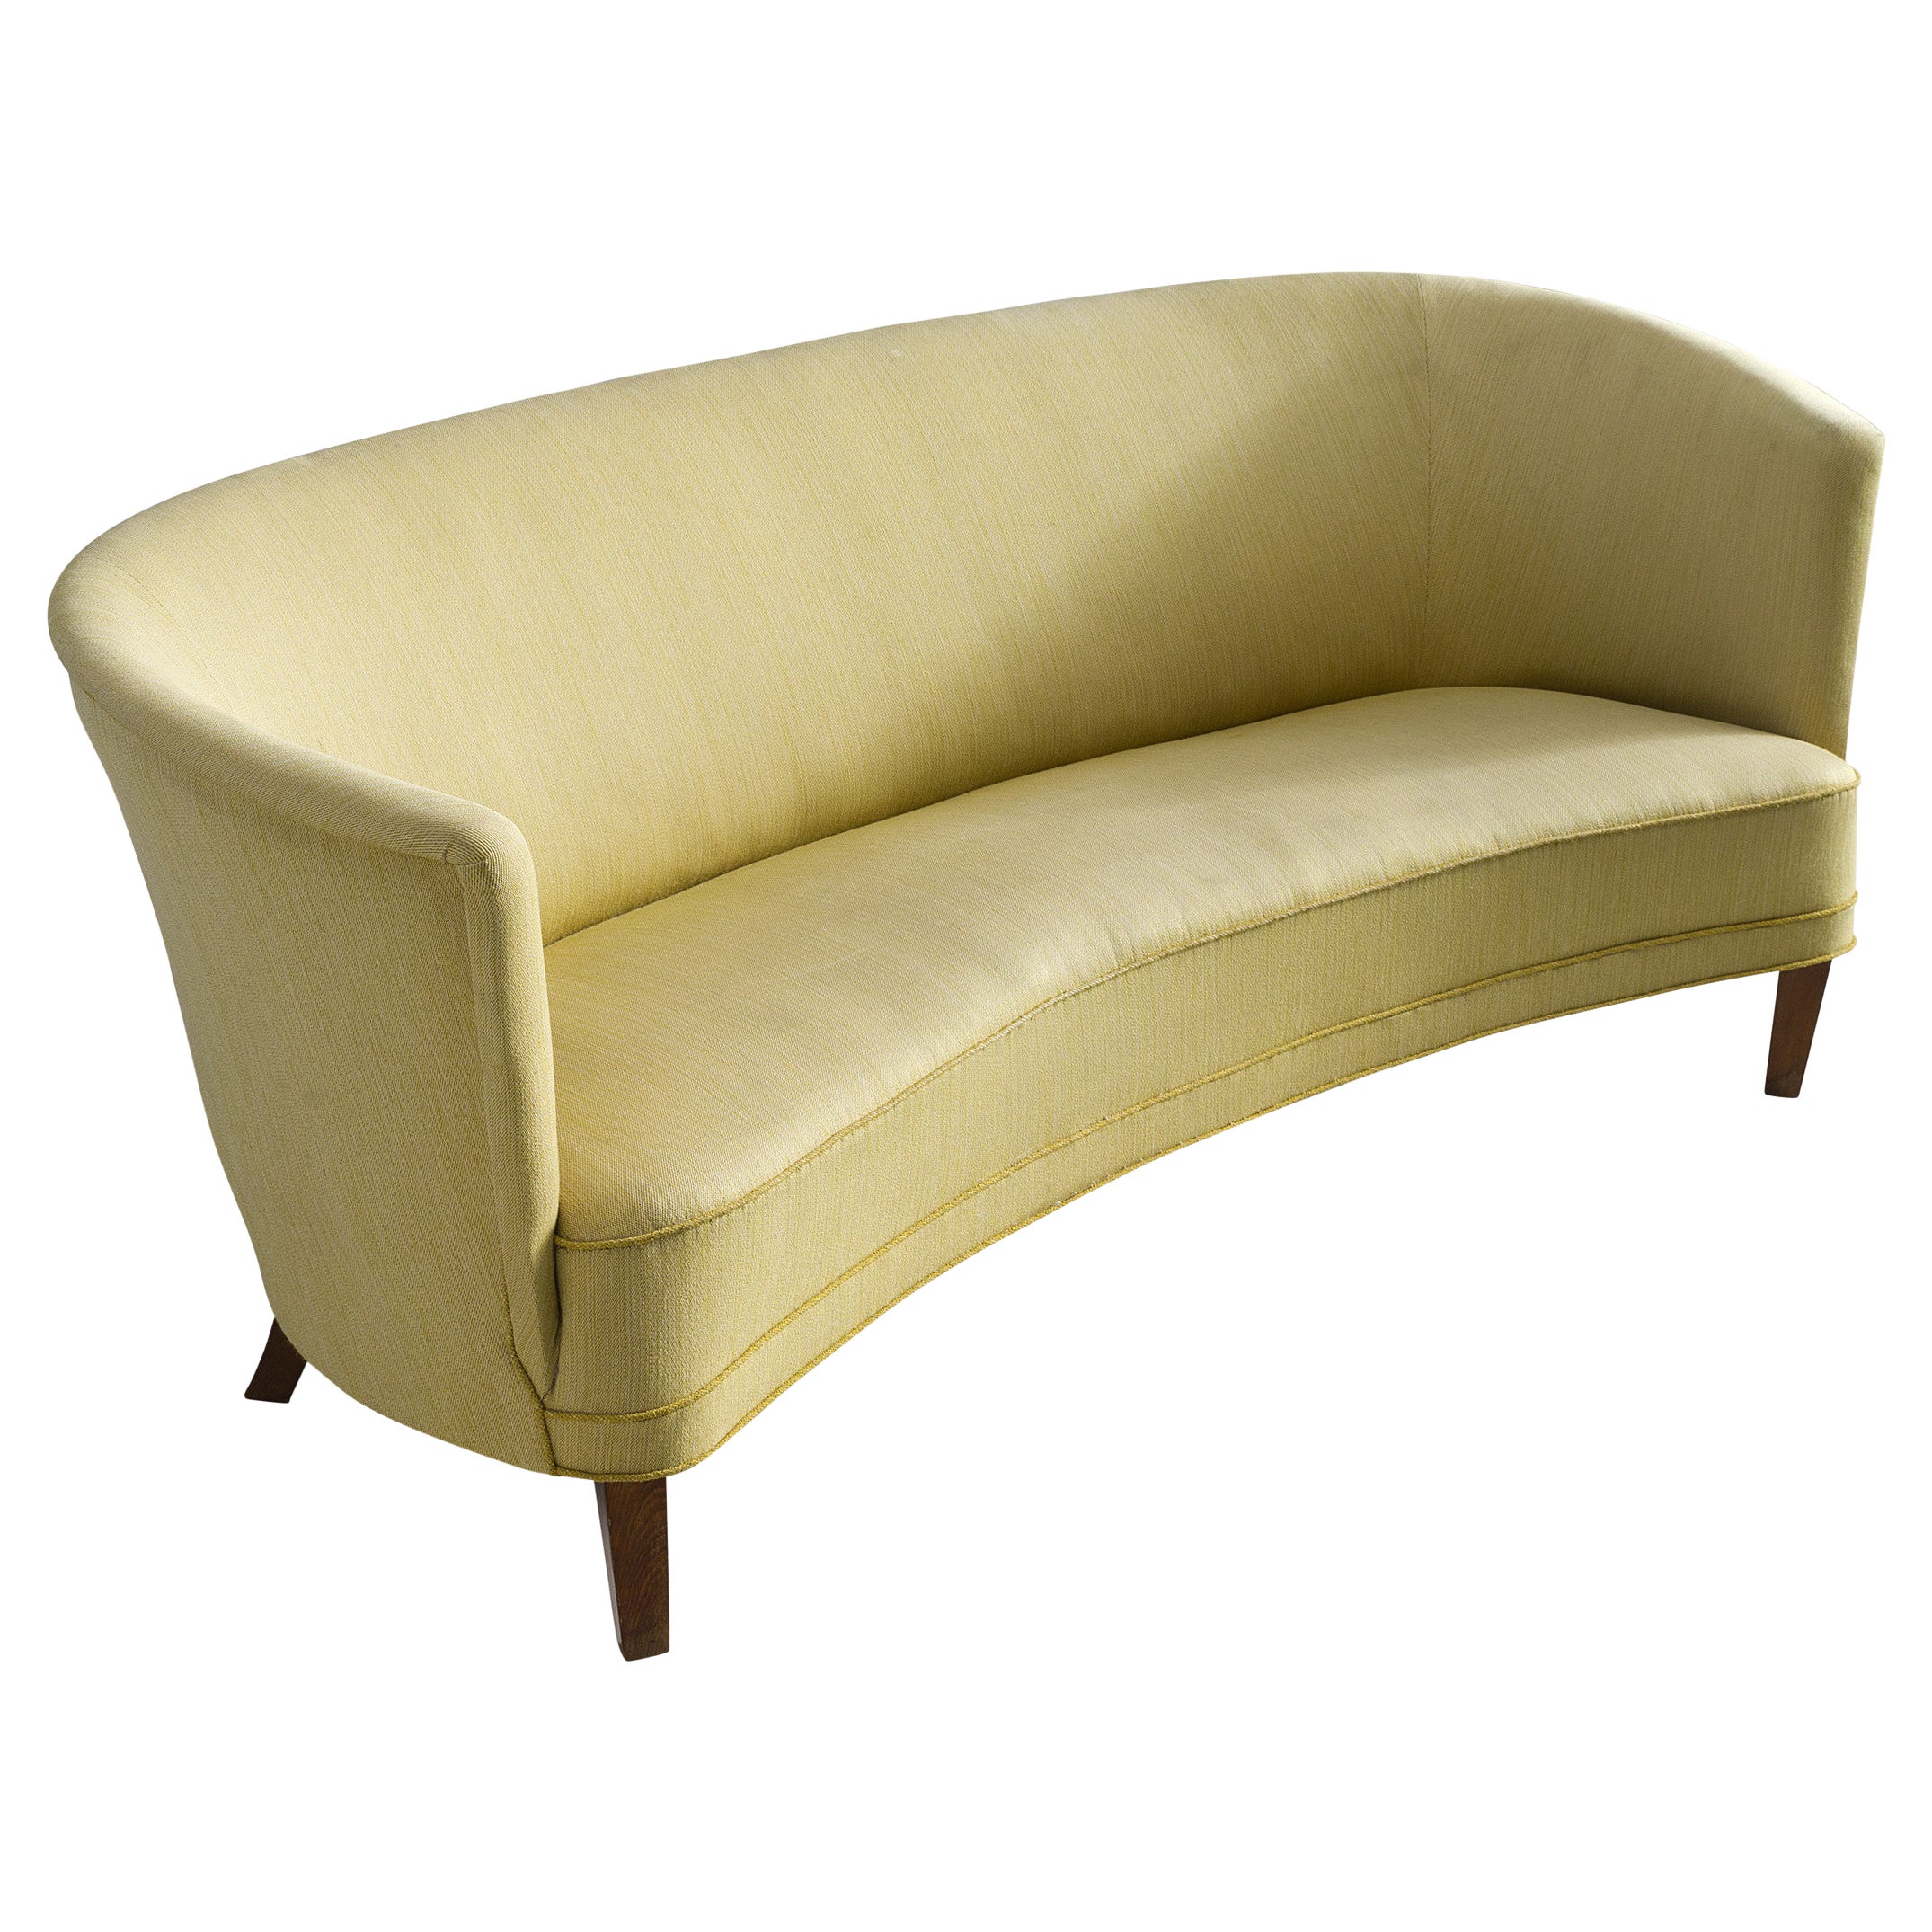 Danish Art Deco 'Banana' Sofa in Yellow Upholstery